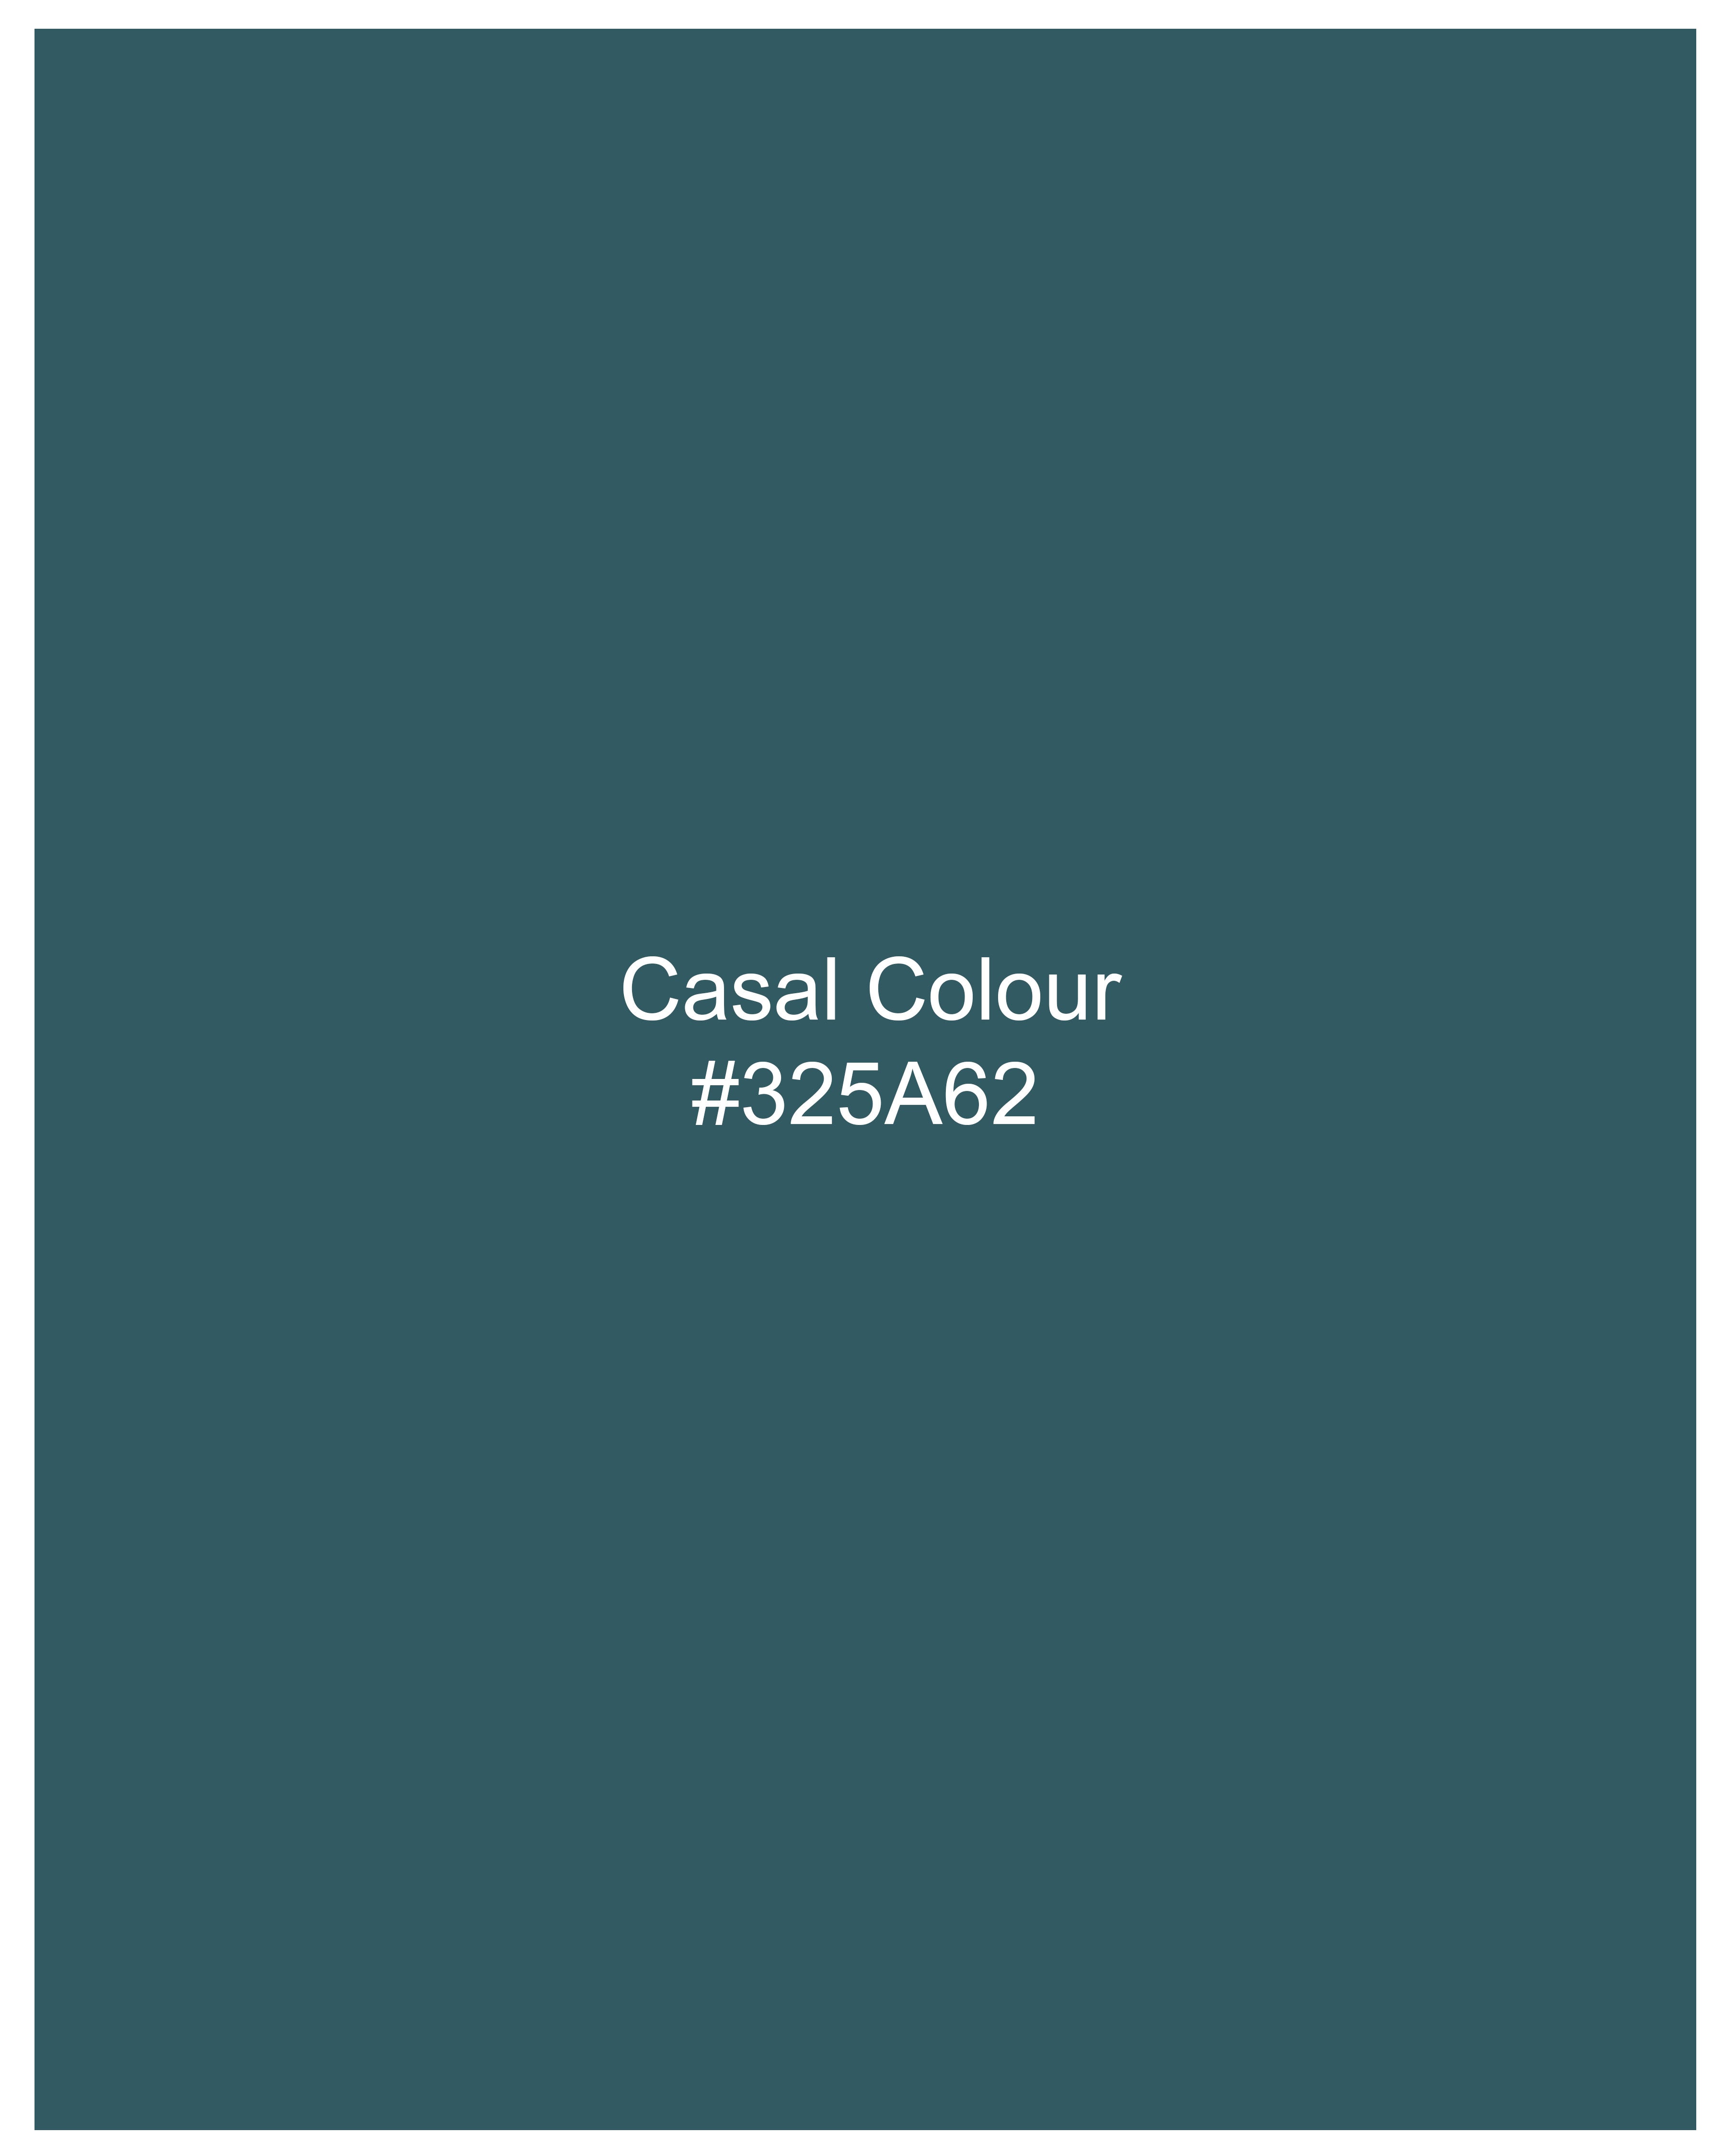 Casal Green Premium Cotton Lounge Pants LP191-28, LP191-30, LP191-32, LP191-34, LP191-36, LP191-38, LP191-40, LP191-42, LP191-44